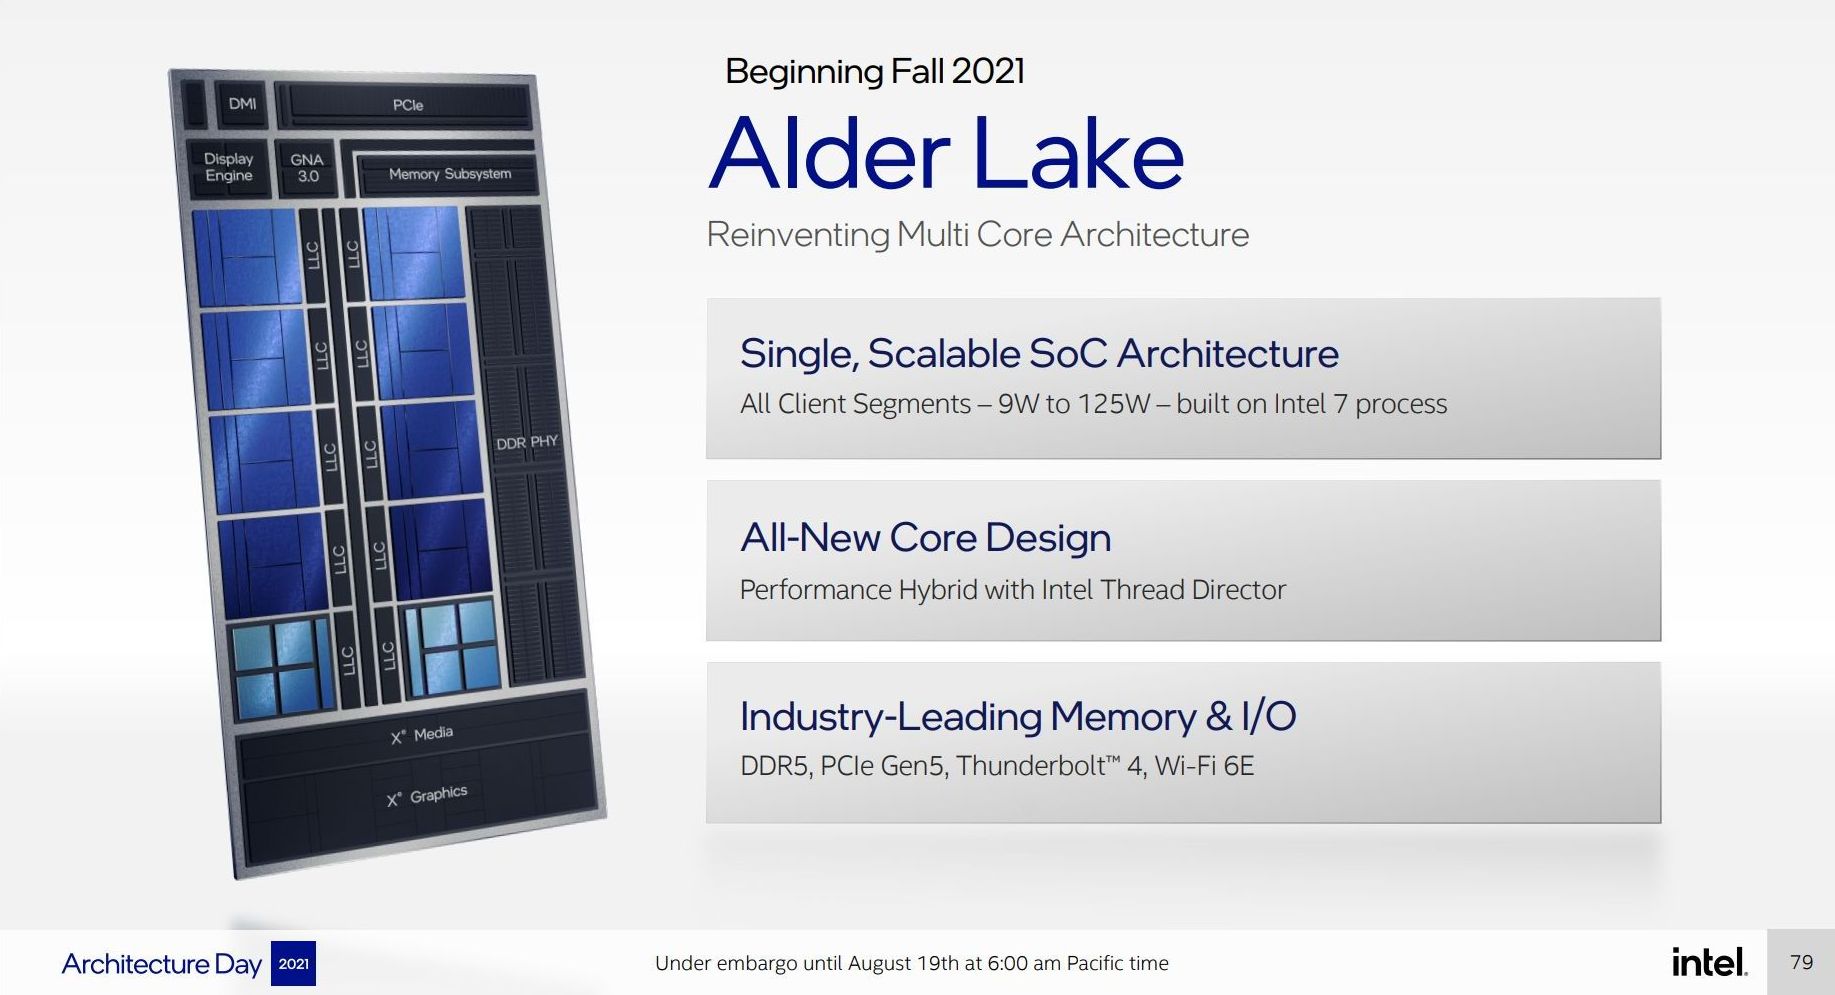 Intel alder lake overview